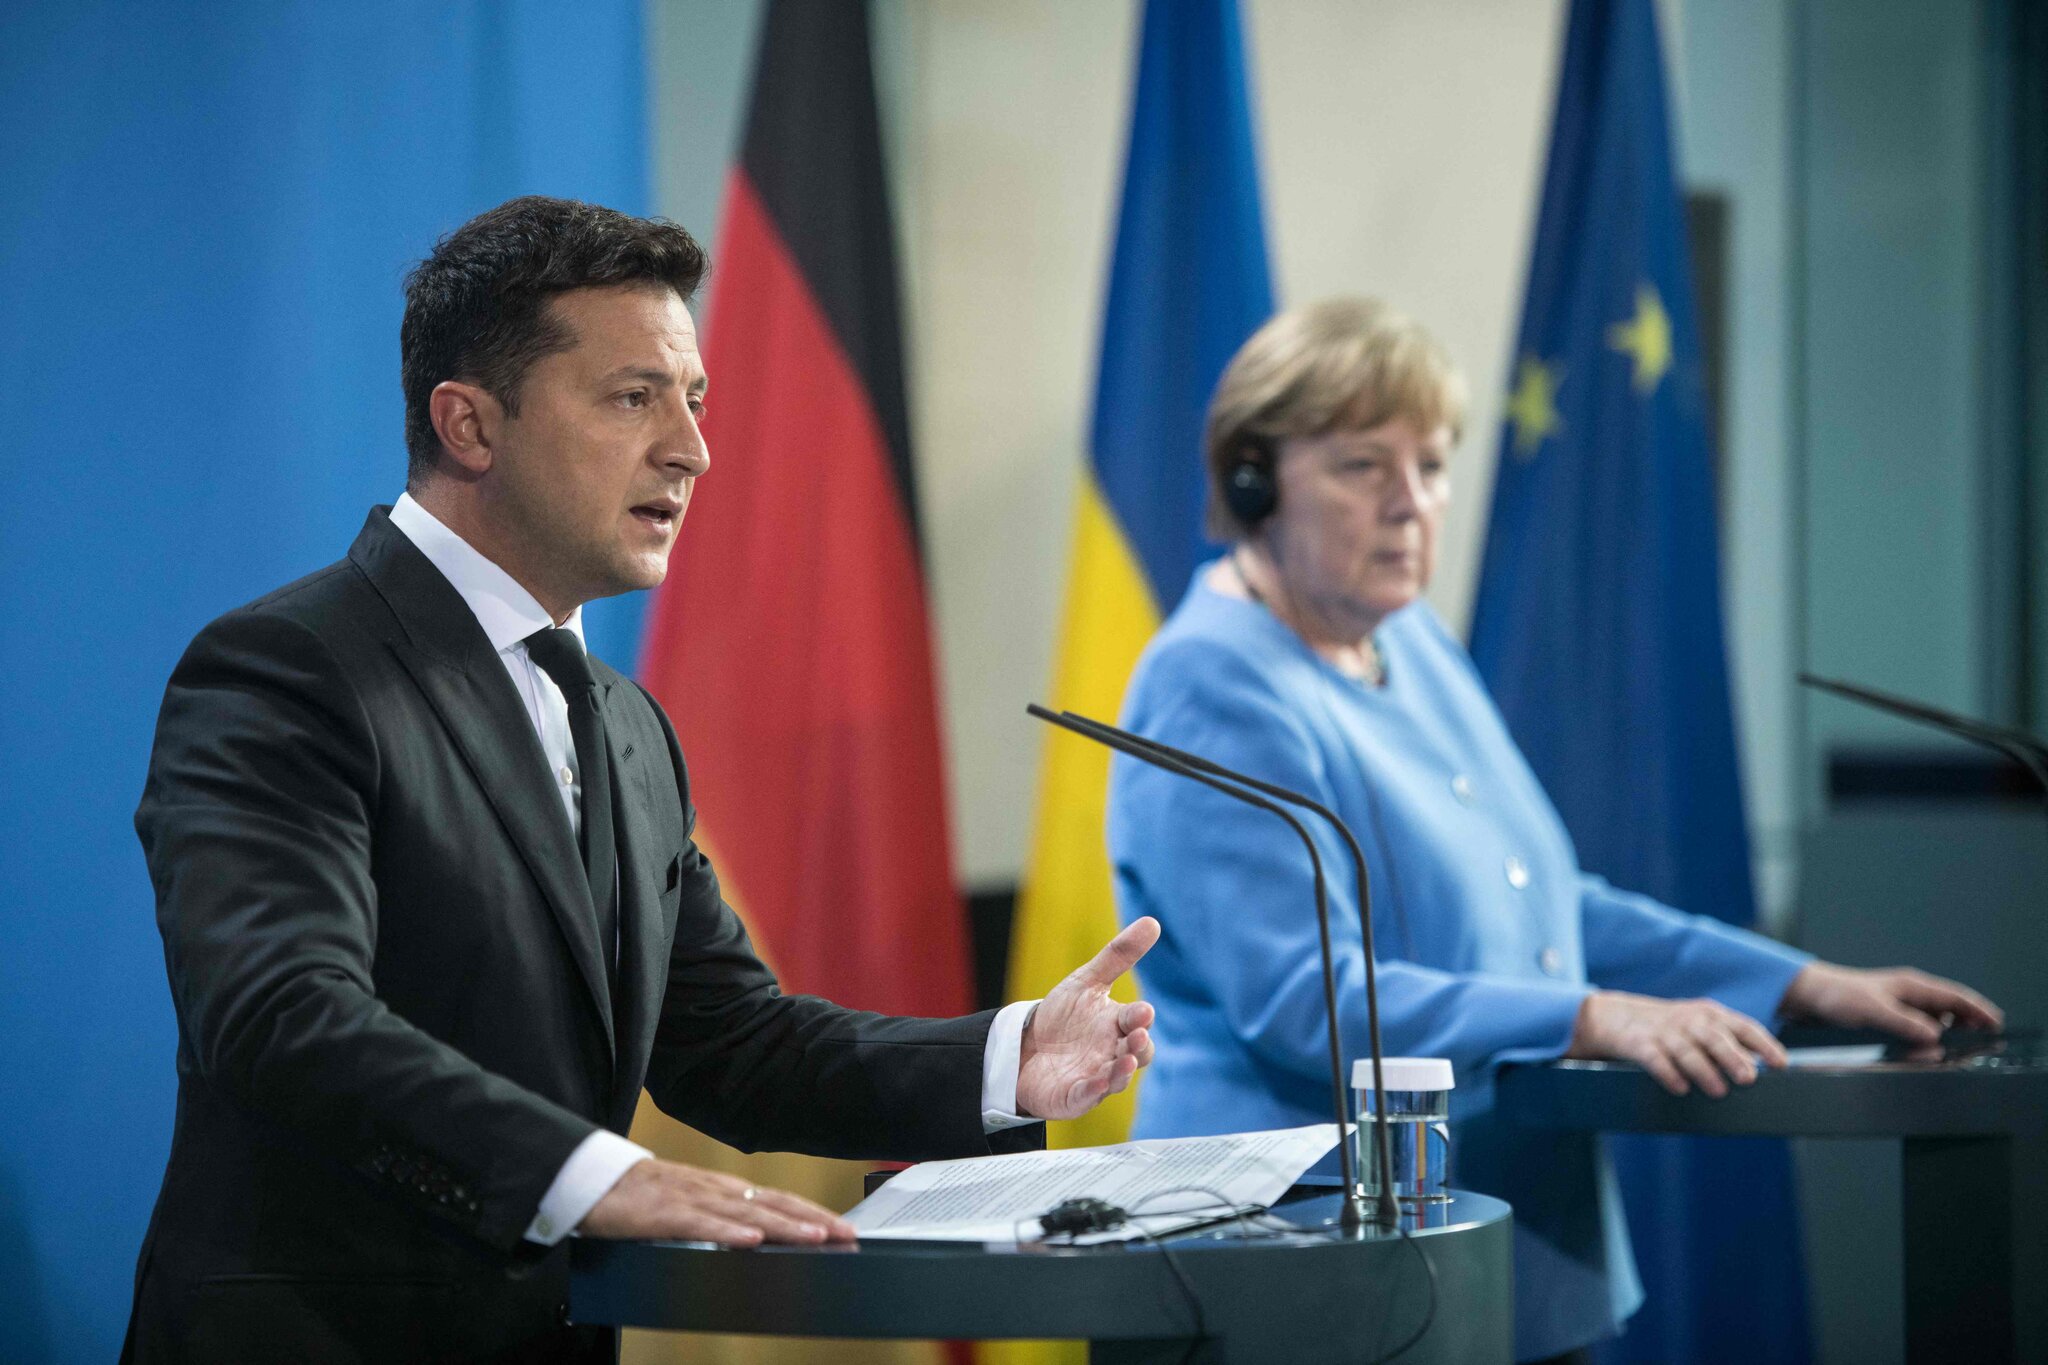 Merkel u përgjigjet kritikave të Zelenskyt për anëtarësimin në NATO: U qëndroj vendimeve të mia